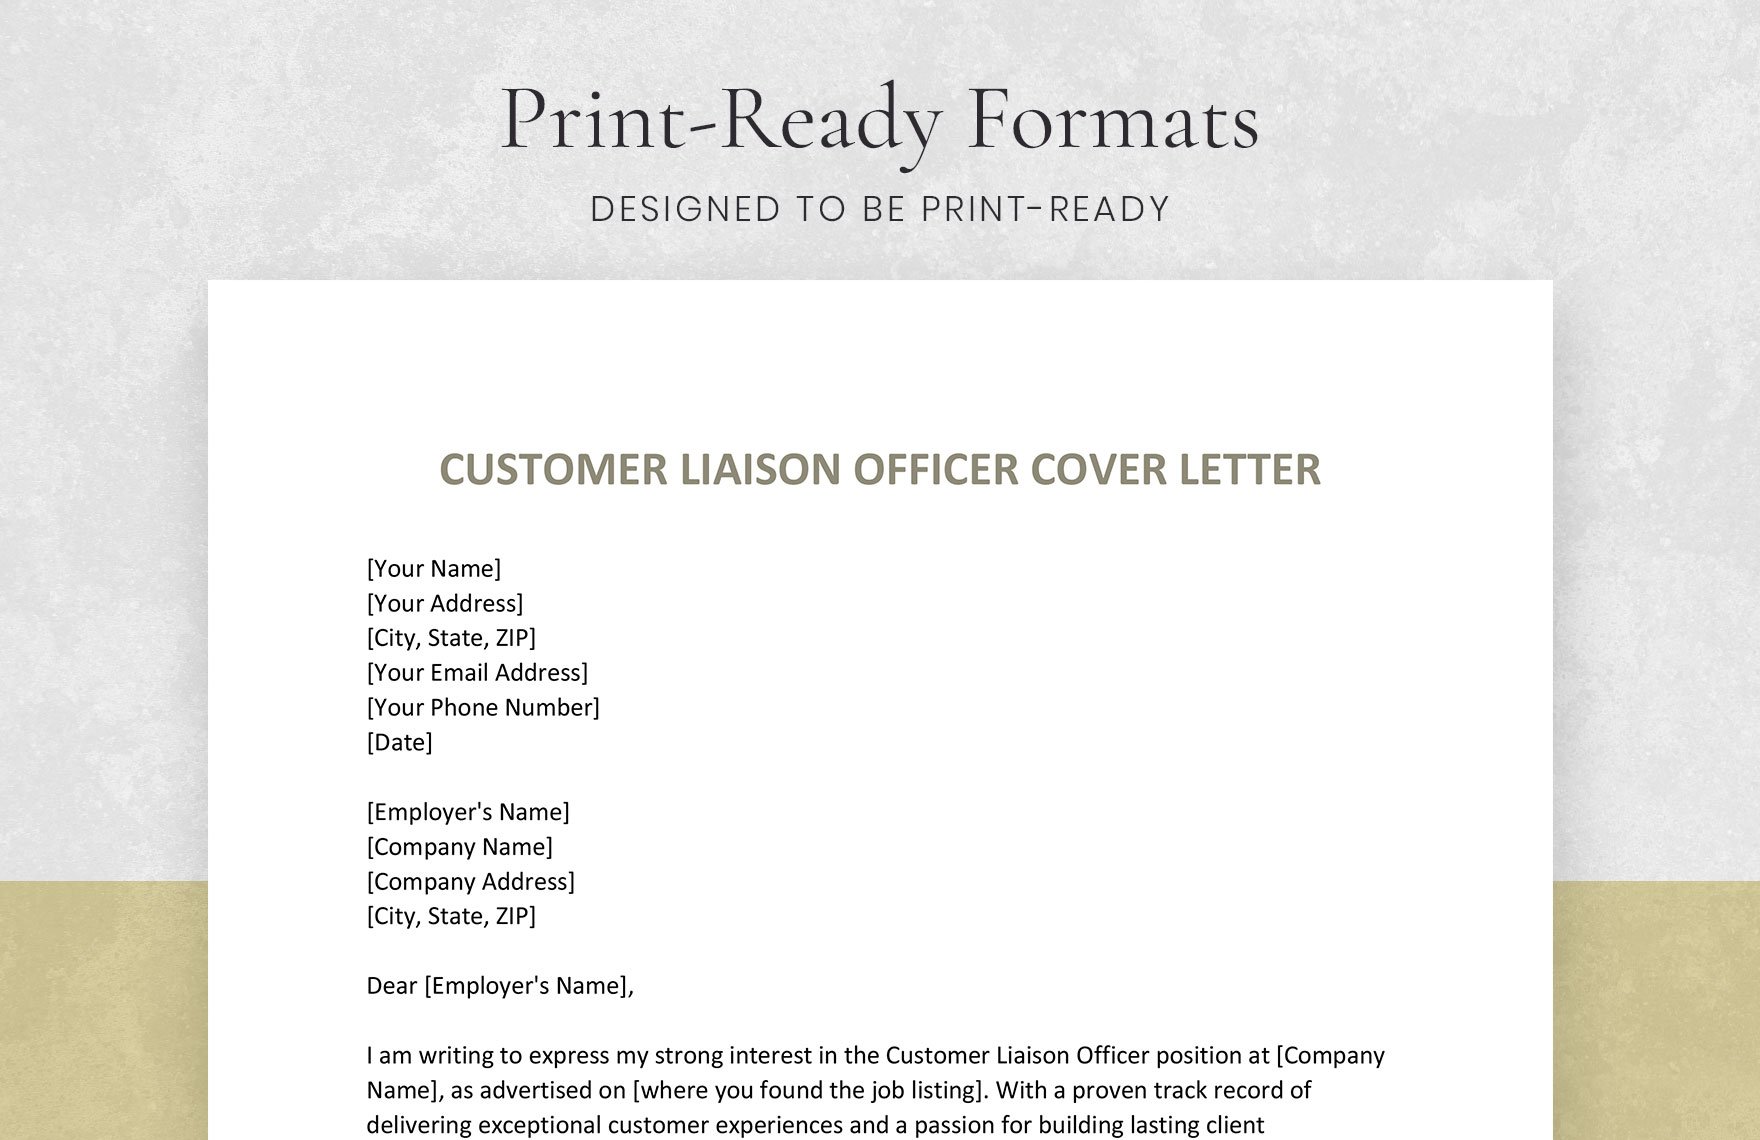 Customer Liaison Officer Cover Letter